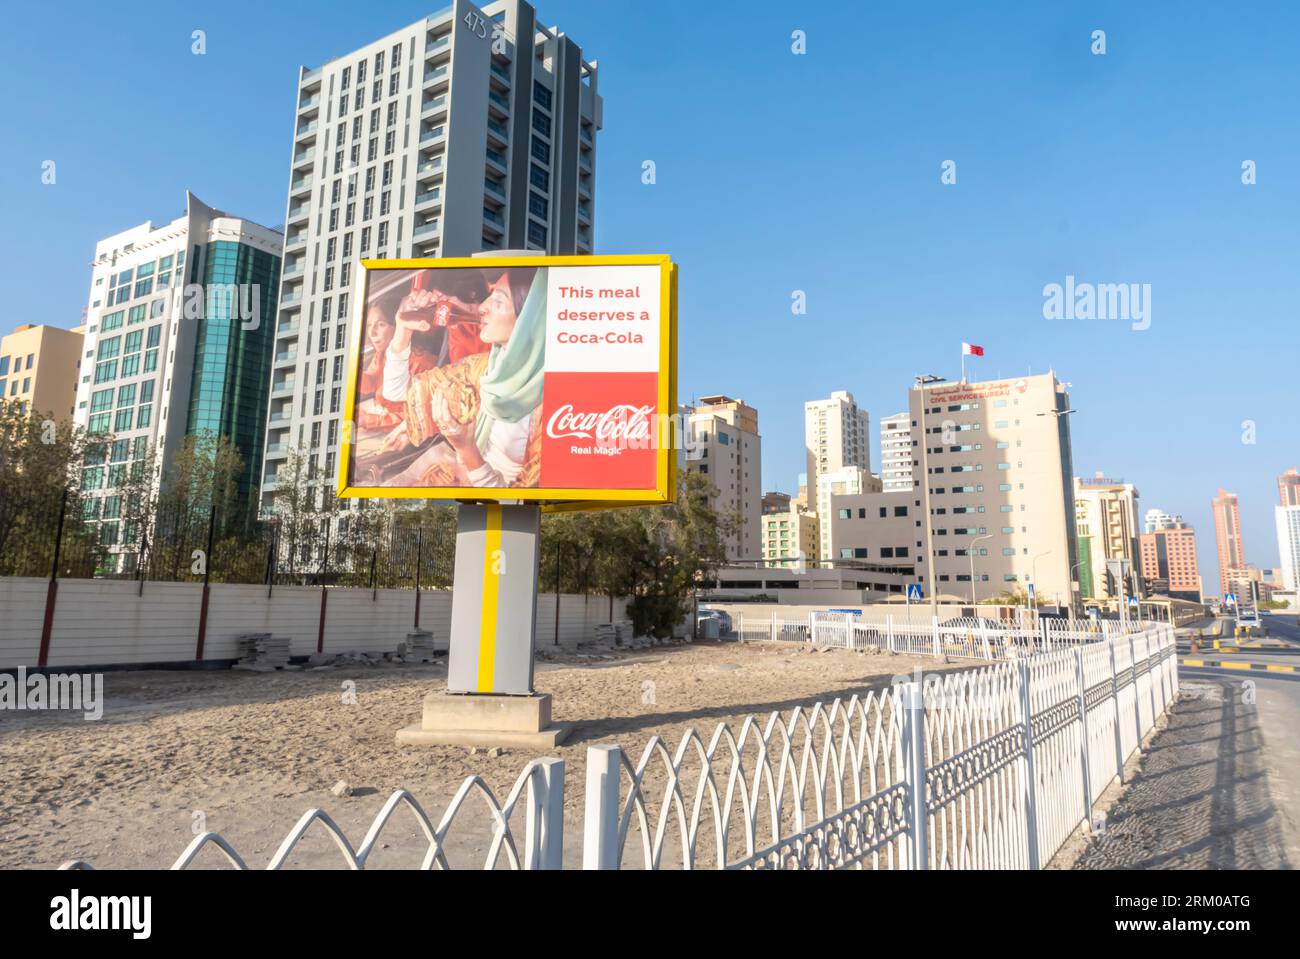 Coca-Cola Real Magic Außenwand-Werbekampagne Werbung auf der Straße in Manama Bahrain. Arabische Frau, die Coca-Cola-Werbung trinkt Stockfoto